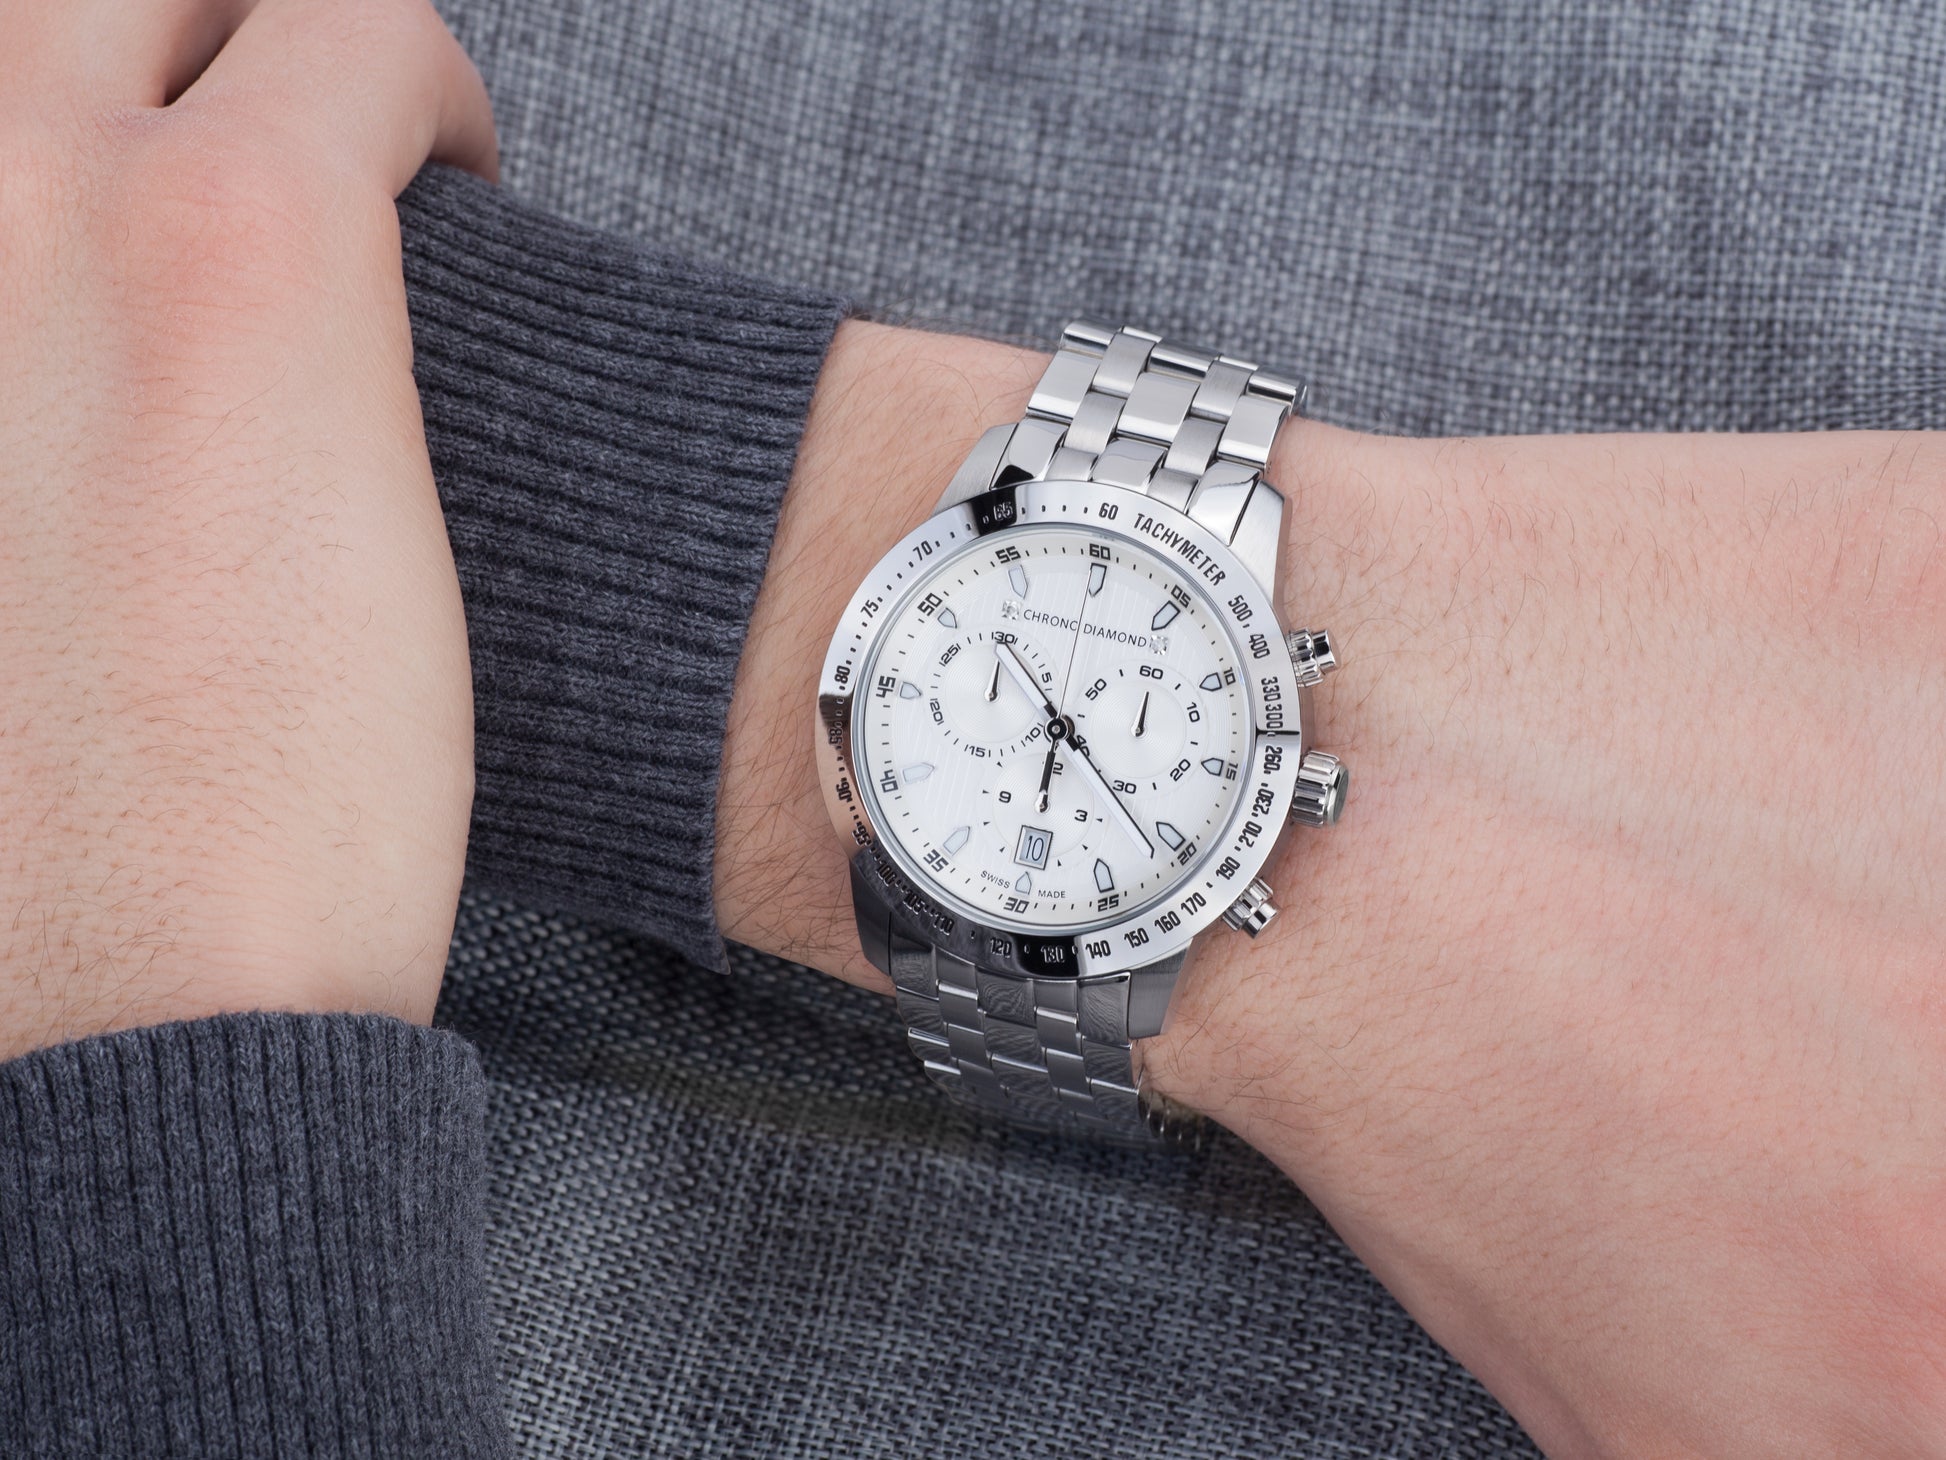 Automatic watches — Theseus — Chrono Diamond — steel silver